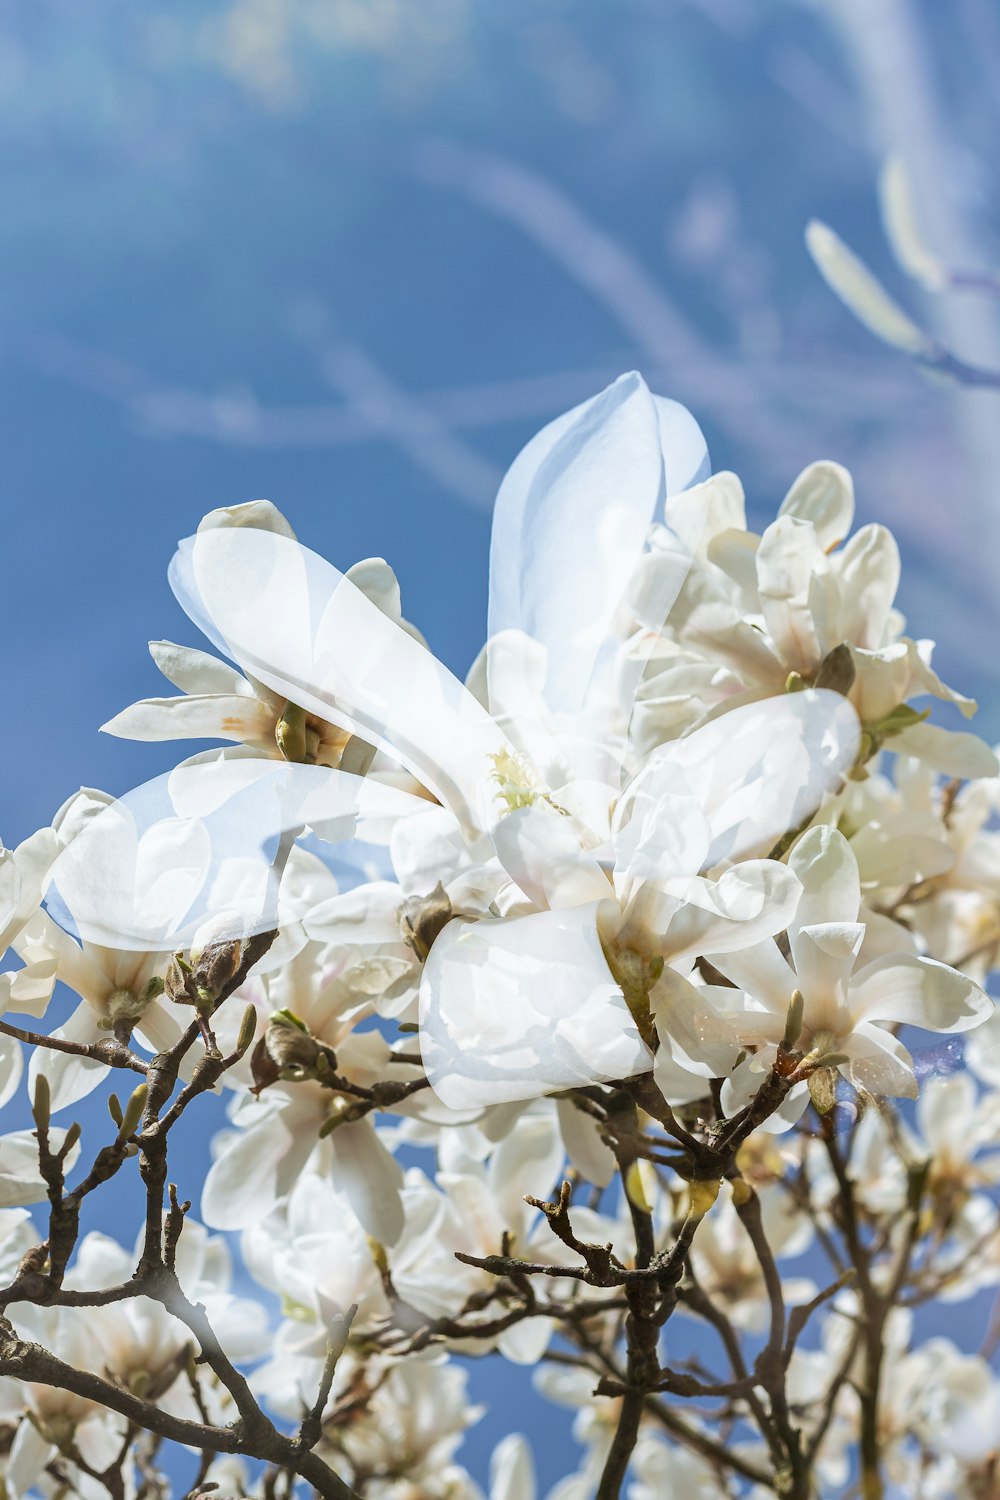 um close up de uma flor branca em uma árvore